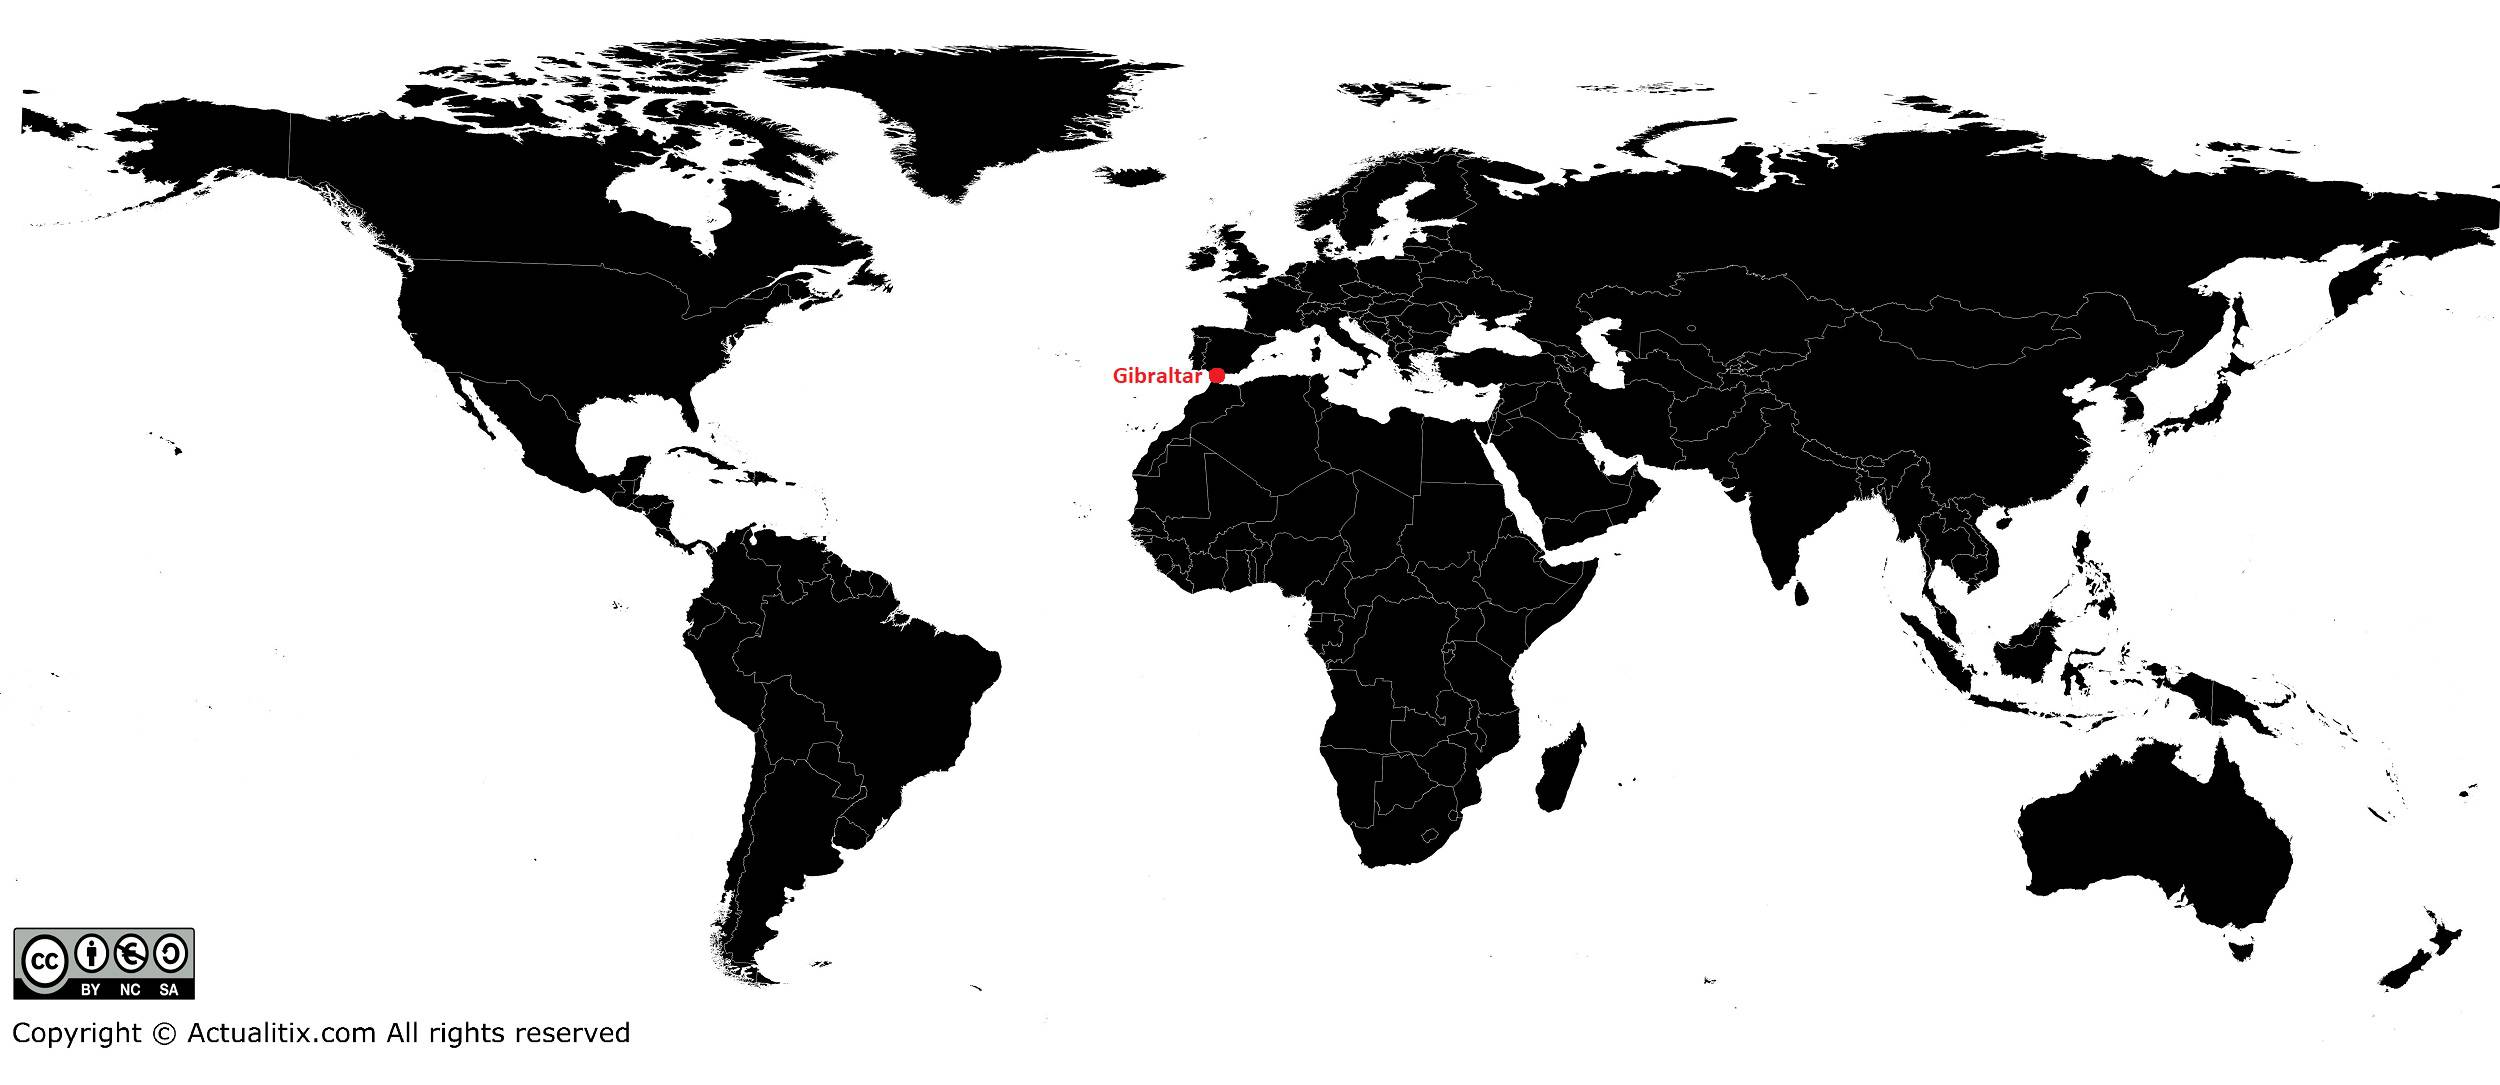 Gibraltar sur une carte du monde